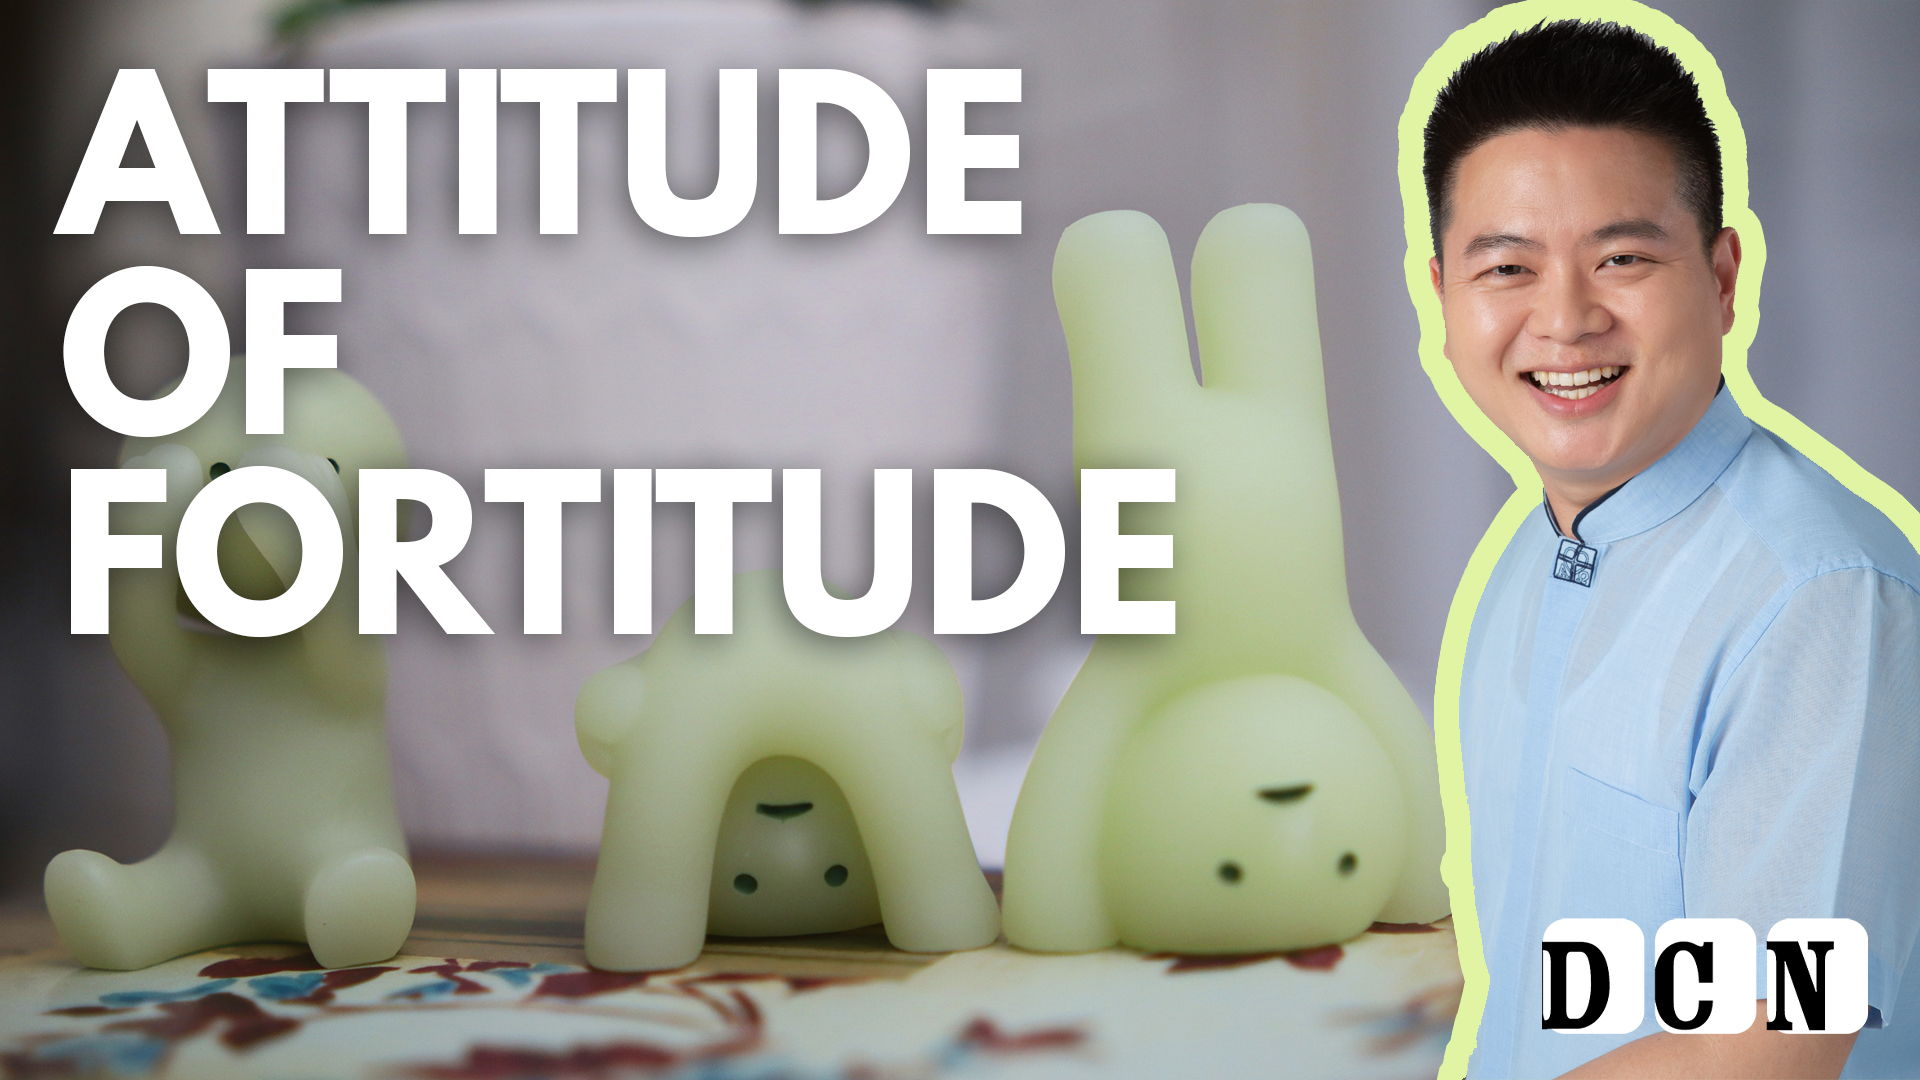 2 – Attitude of Fortitude